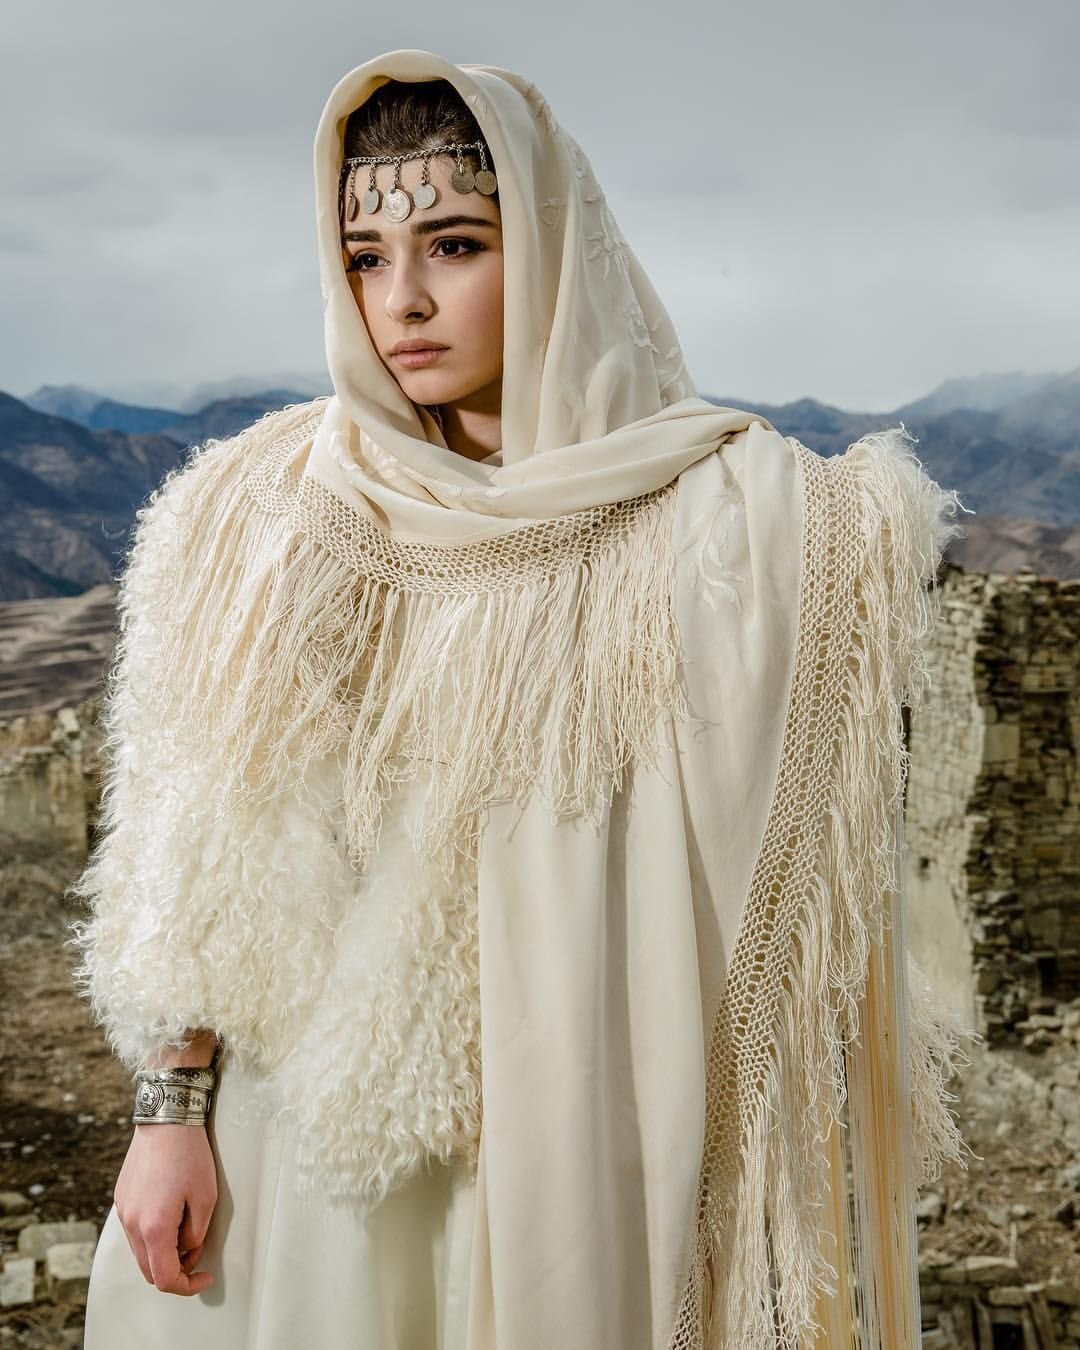 Горянки Дагестана в национальной одежде